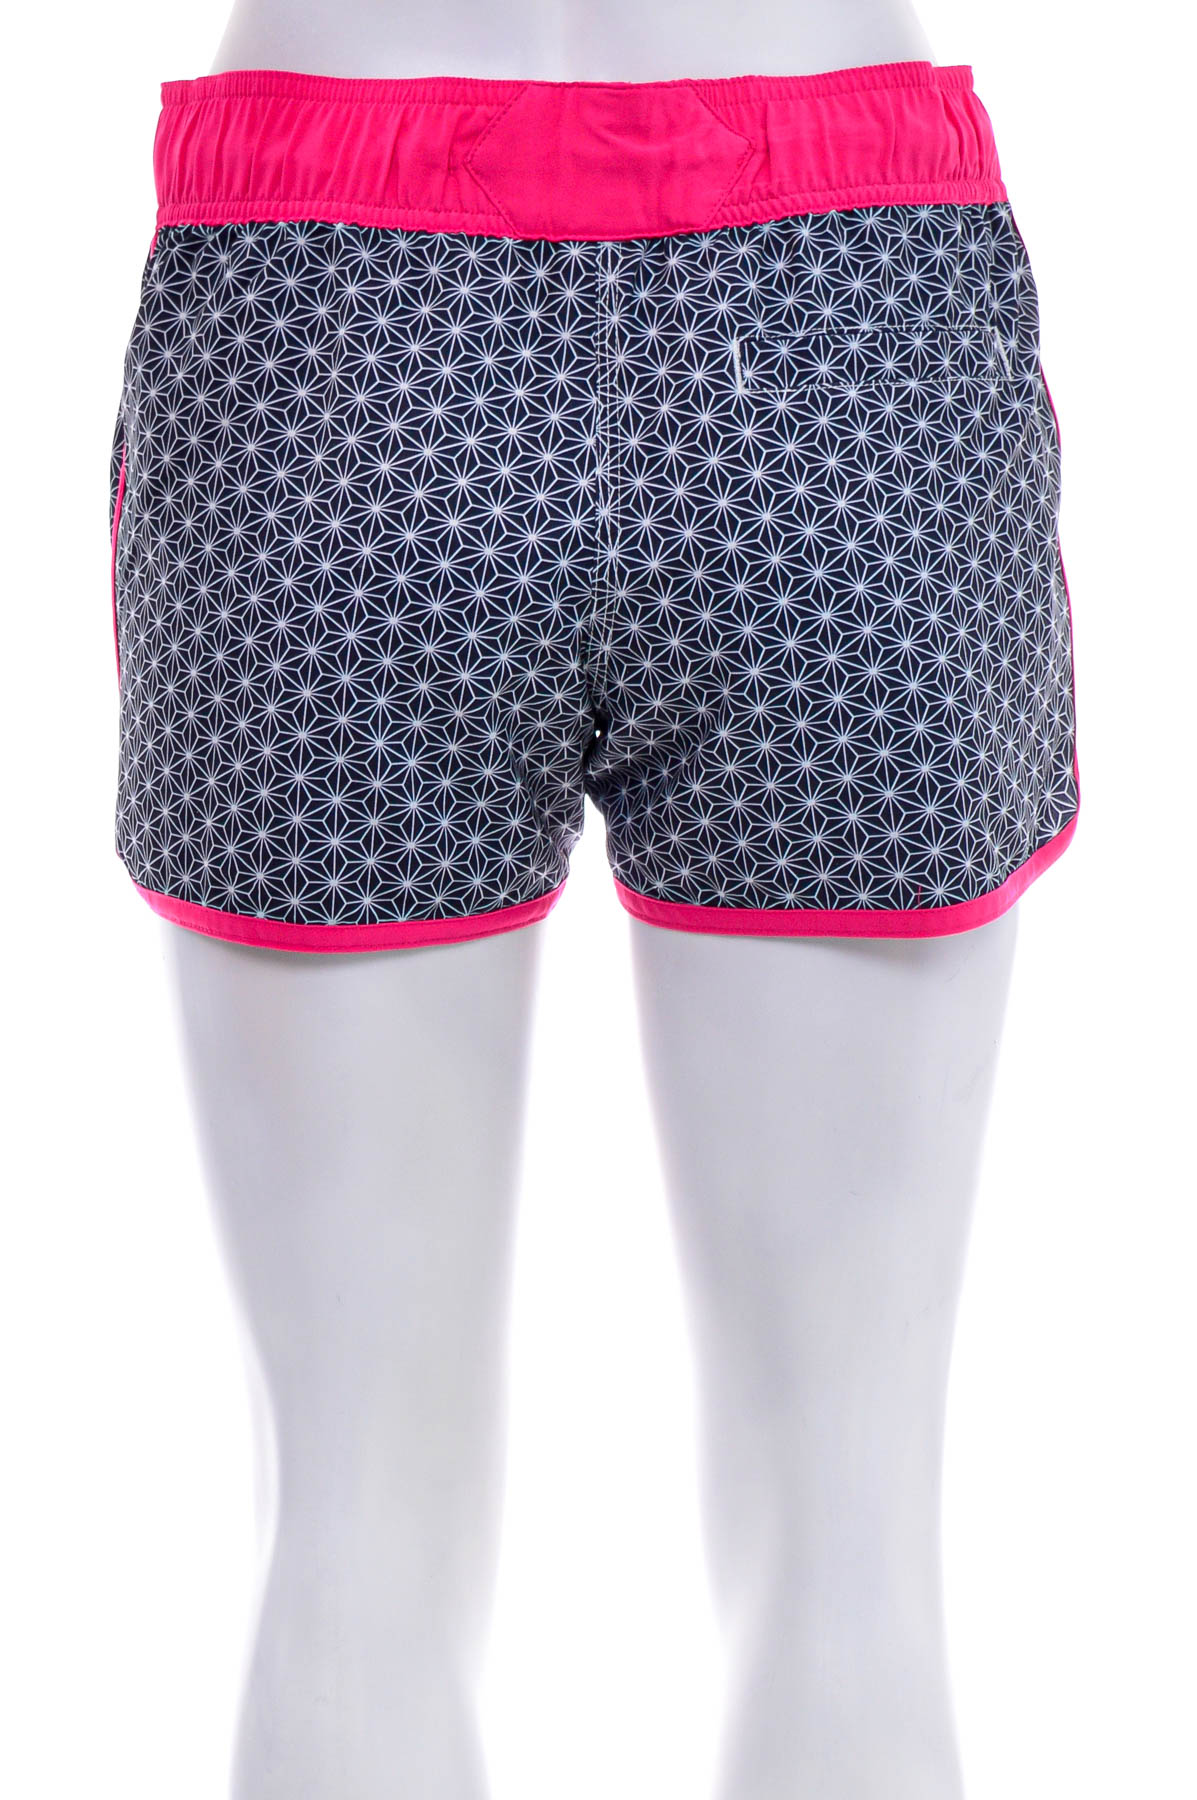 Women's shorts - OLAIAN - 1